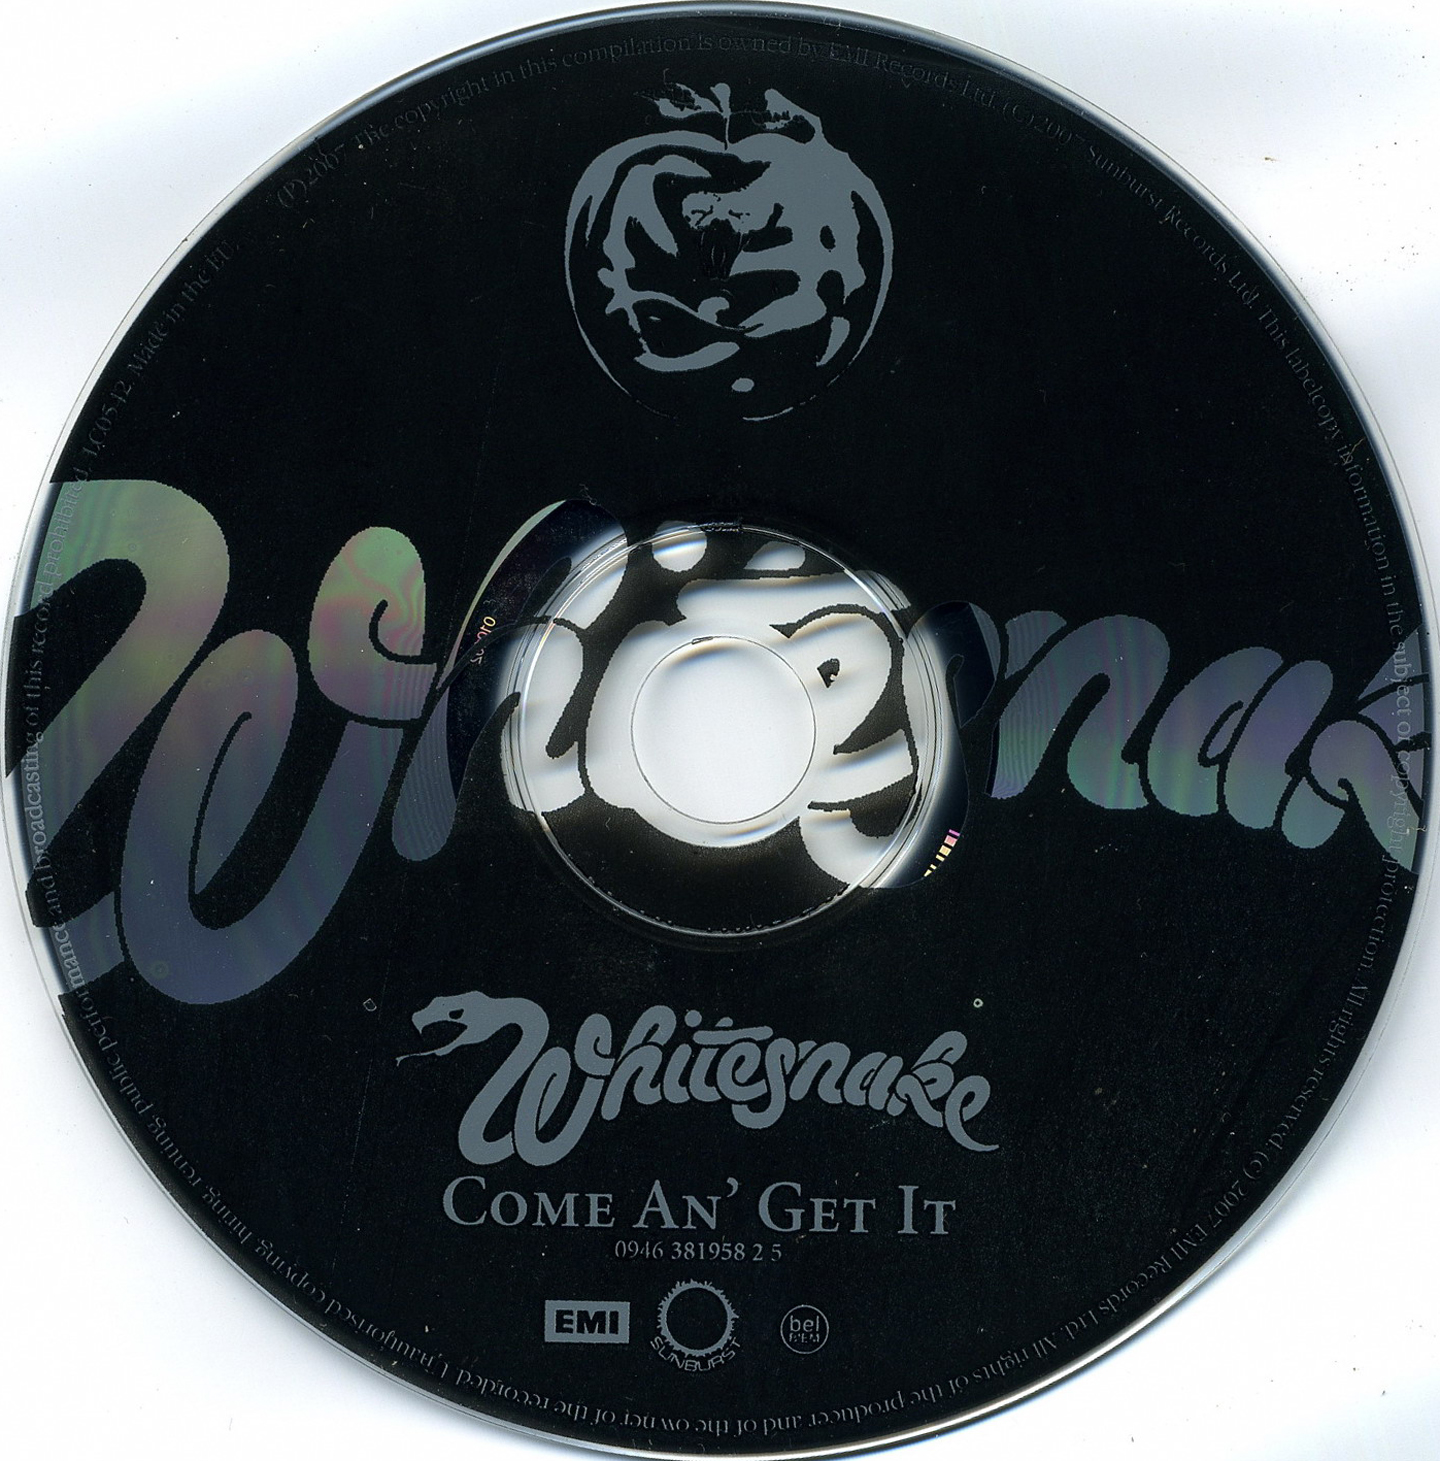 ¿Qué estáis escuchando ahora? - Página 17 Whitesnake-Come+An+Get+It-CD